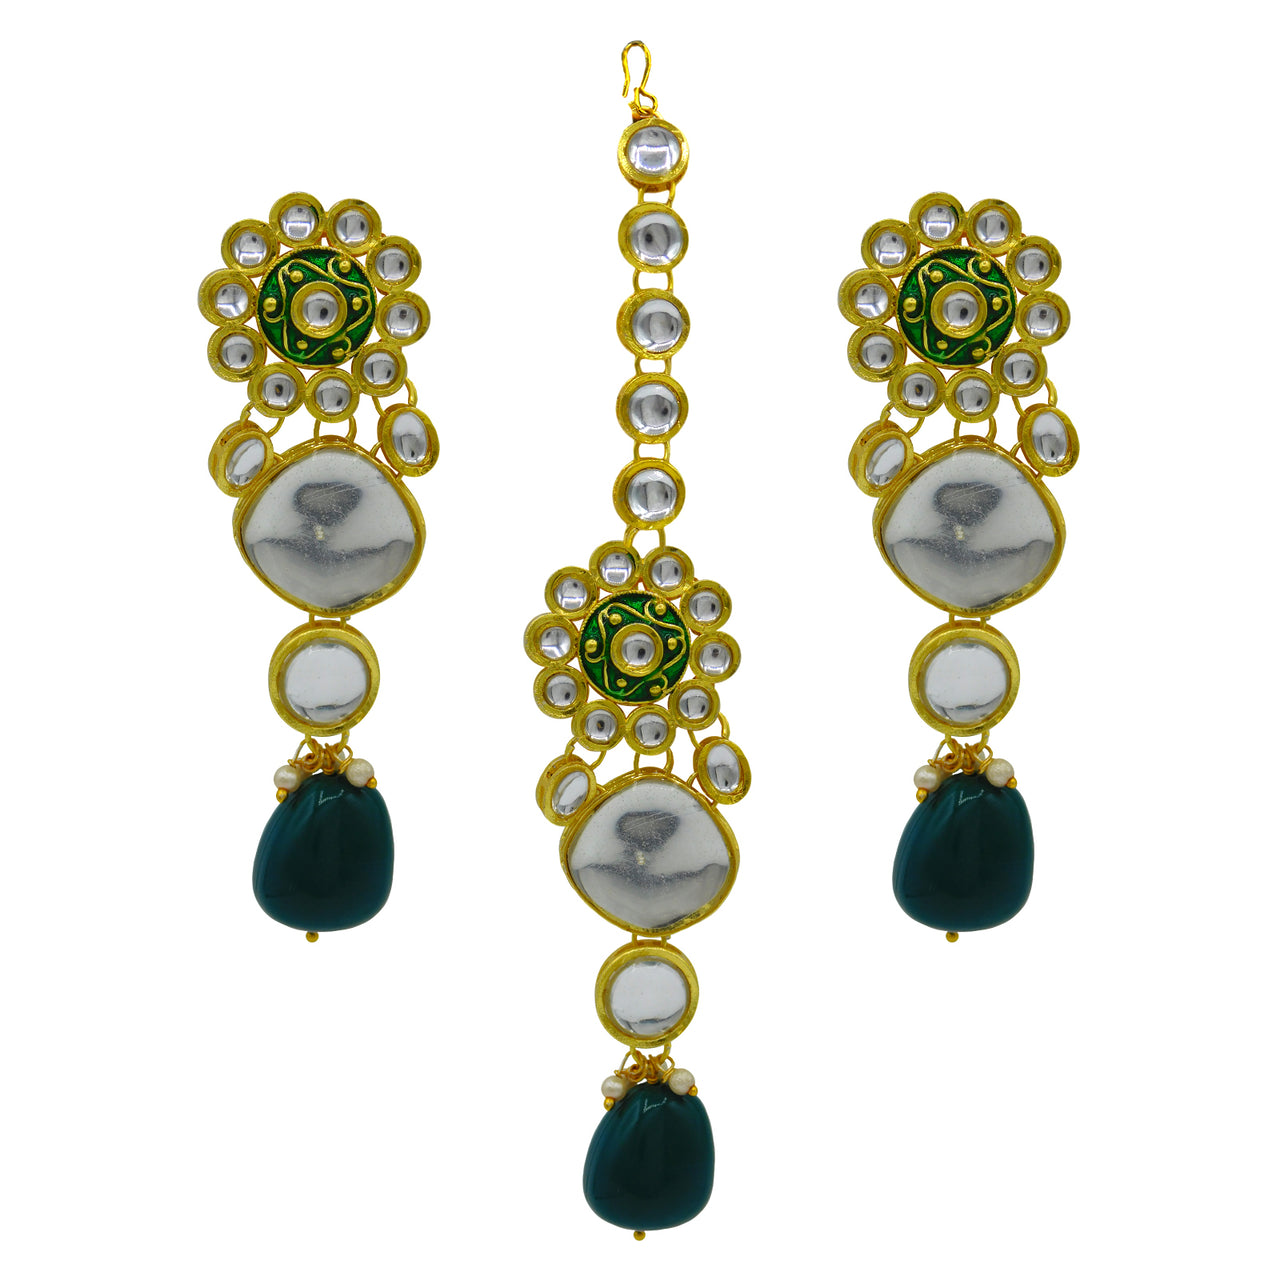 Sujwel Gold Plated Kundan Design Choker Necklace Set (08-0442)